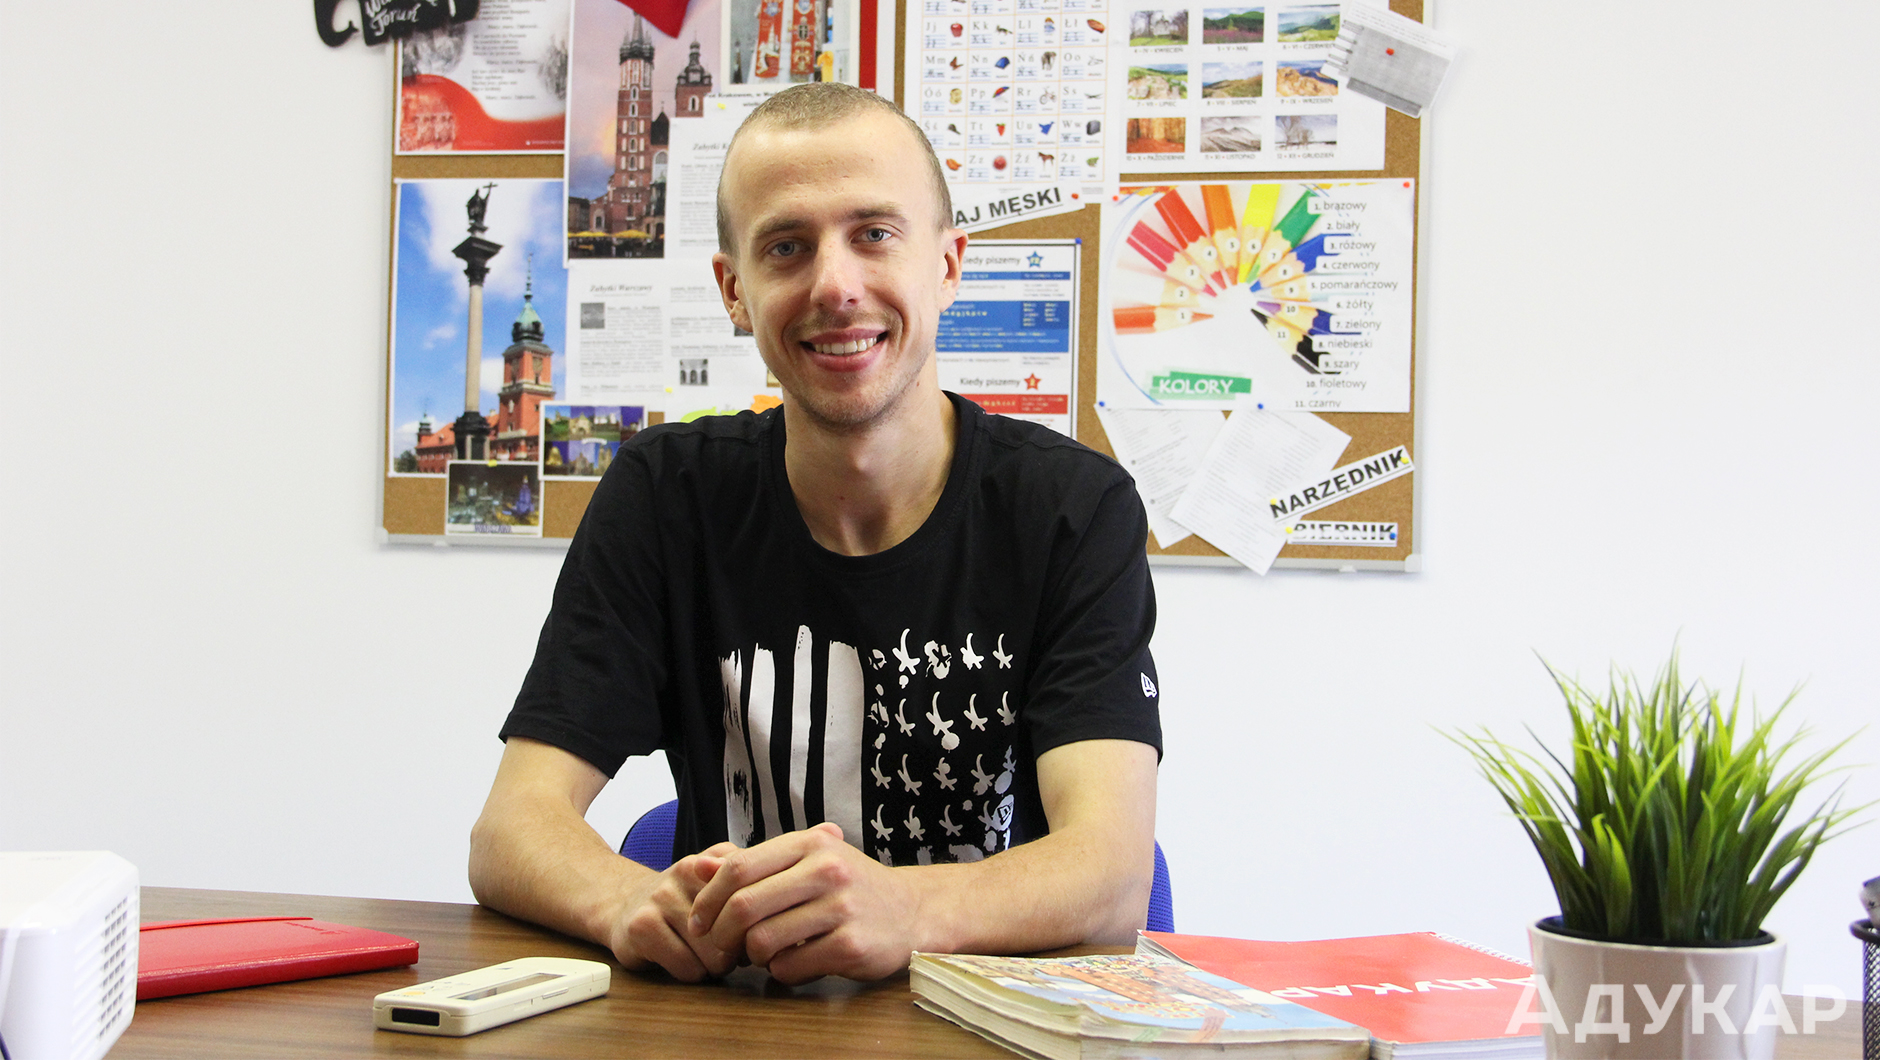 Алексей преподаёт польский язык для карты поляка три года. За это время он подготовил около 20 групп, из которых большинство студентов сдали экзамен с первого раза